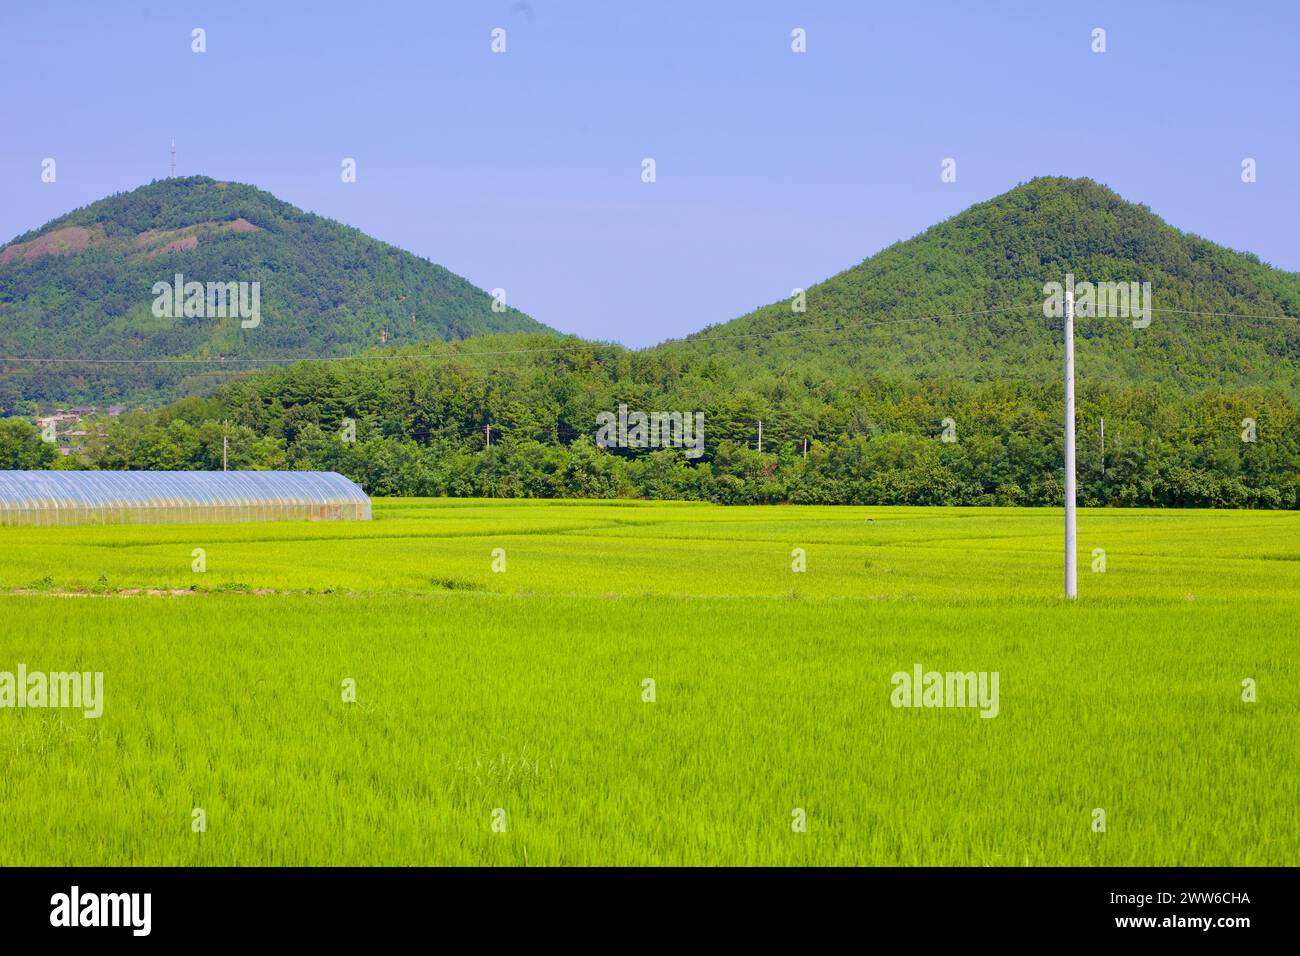 Contea di Goseong, Corea del Sud - 30 luglio 2019: Campi di riso verdi maturi si estendono verso il primo piano con due montagne verdi di forma conica che si innalzano m Foto Stock